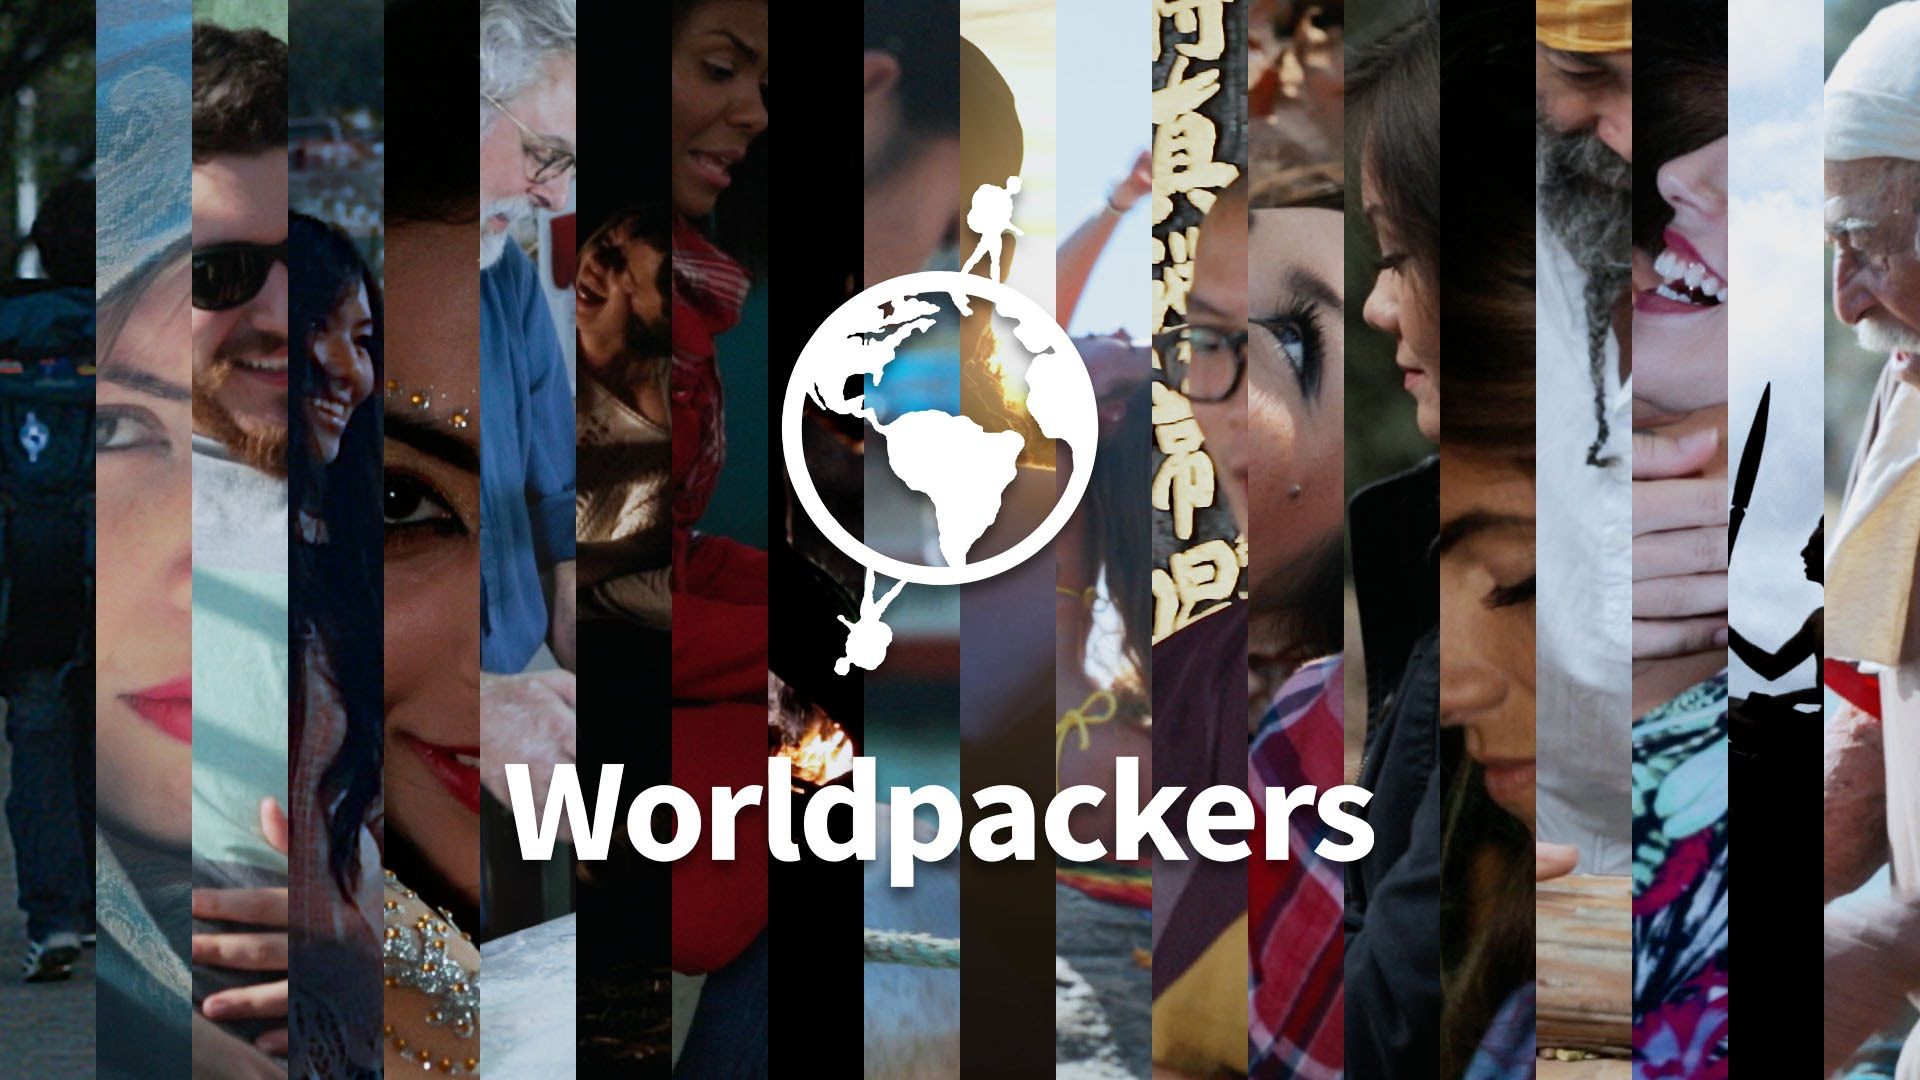 Viaggiare gratis con Worldpackers: baratta lavoro per vacanze